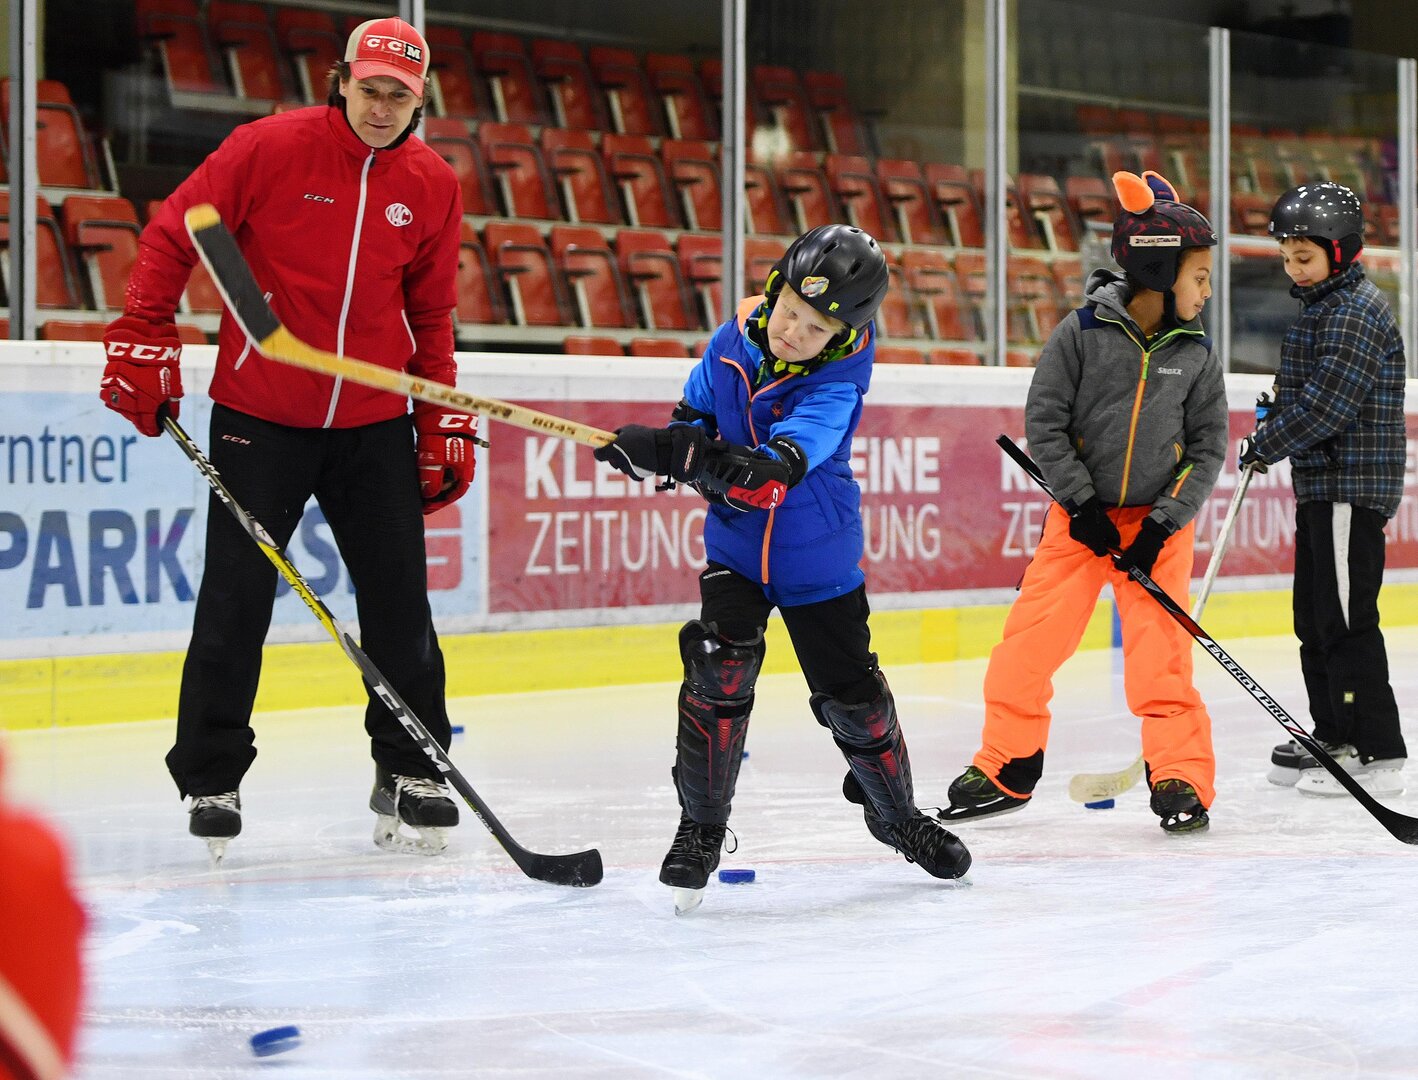 Eishockey ist beim Wintersportschnuppern jedes Jahr ein Fixstarter.